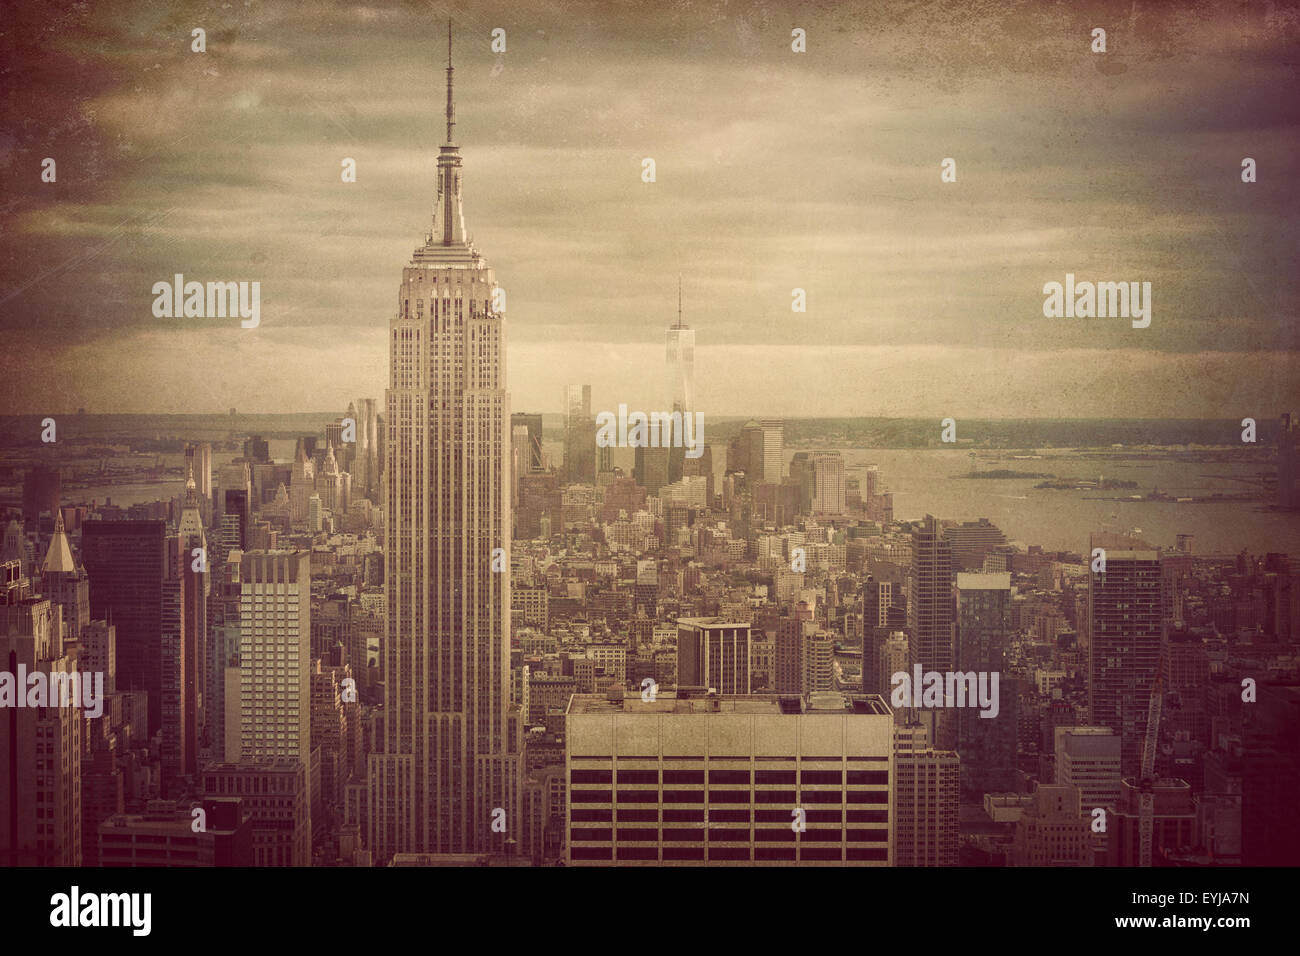 La ville de New York avec l'Empire State Building avec effet filtre rétro Banque D'Images